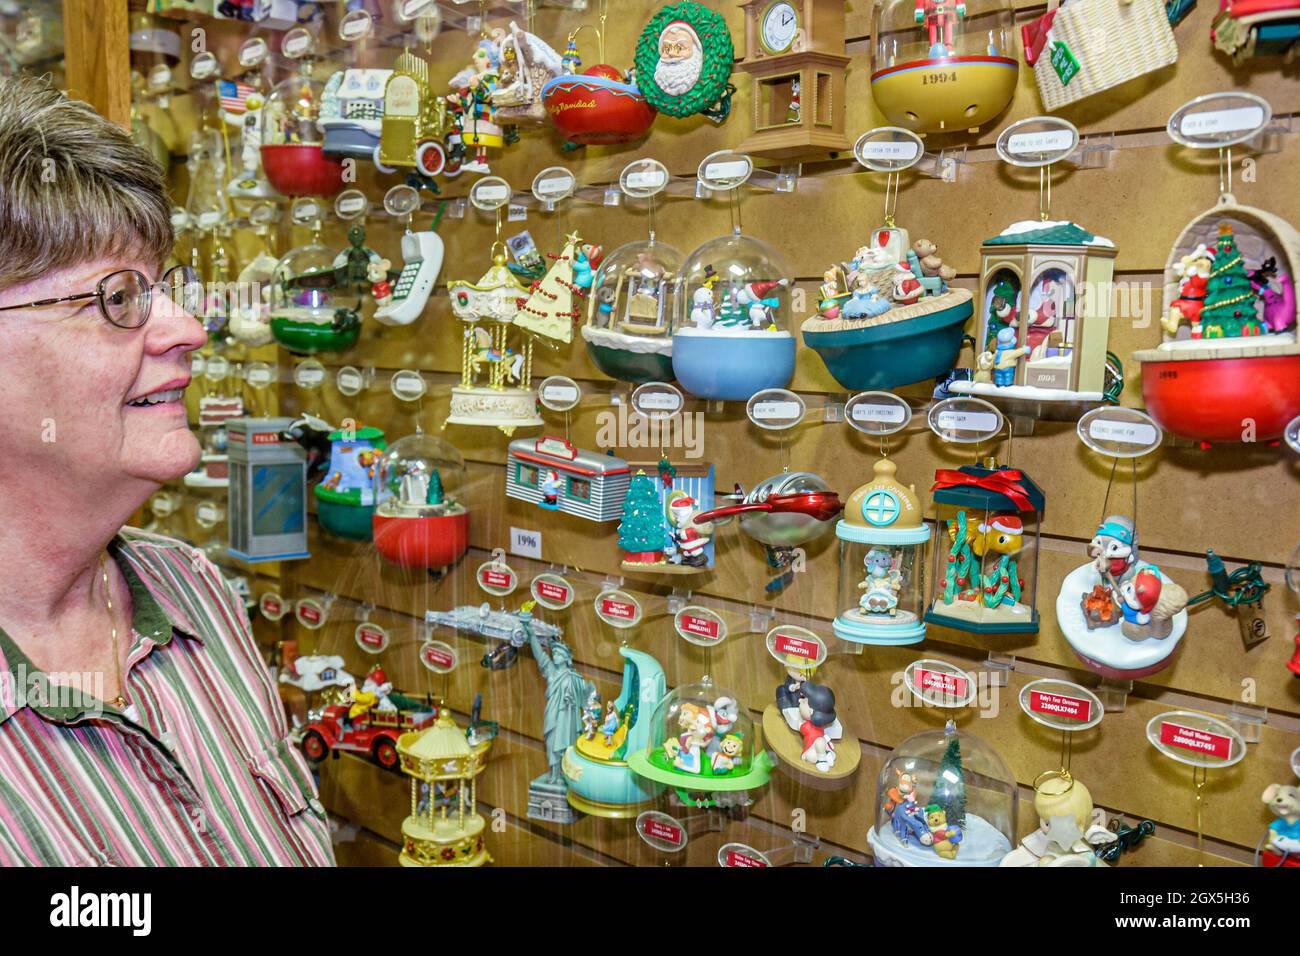 Indiana Varsovia, la tienda de fiestas Hallmark Ornament Museum, decoraciones de árboles de Navidad buscando compras mujer exposición venta Foto de stock